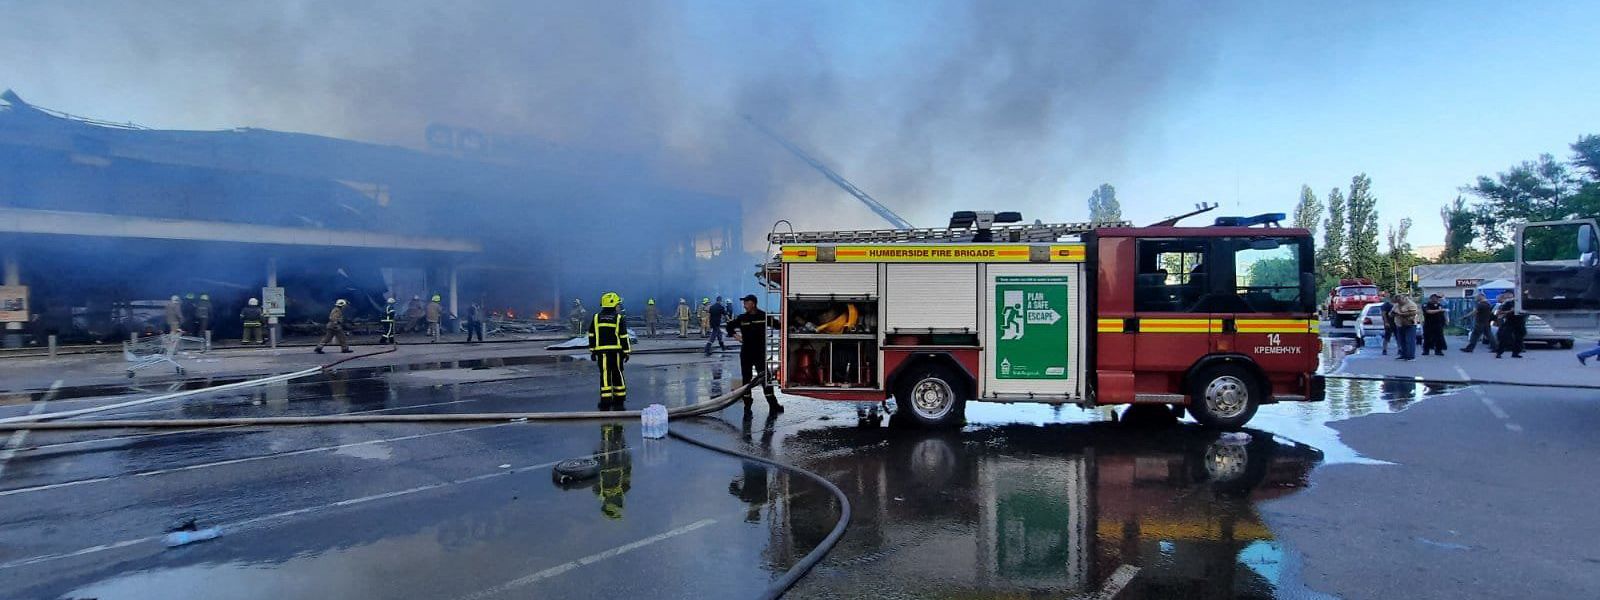 Imagem divulgada pelo Serviço de Emergência do Estado da Ucrânia a 27 de junho de 2022 mostra os bombeiros a apagar o fogo no centro comercial.